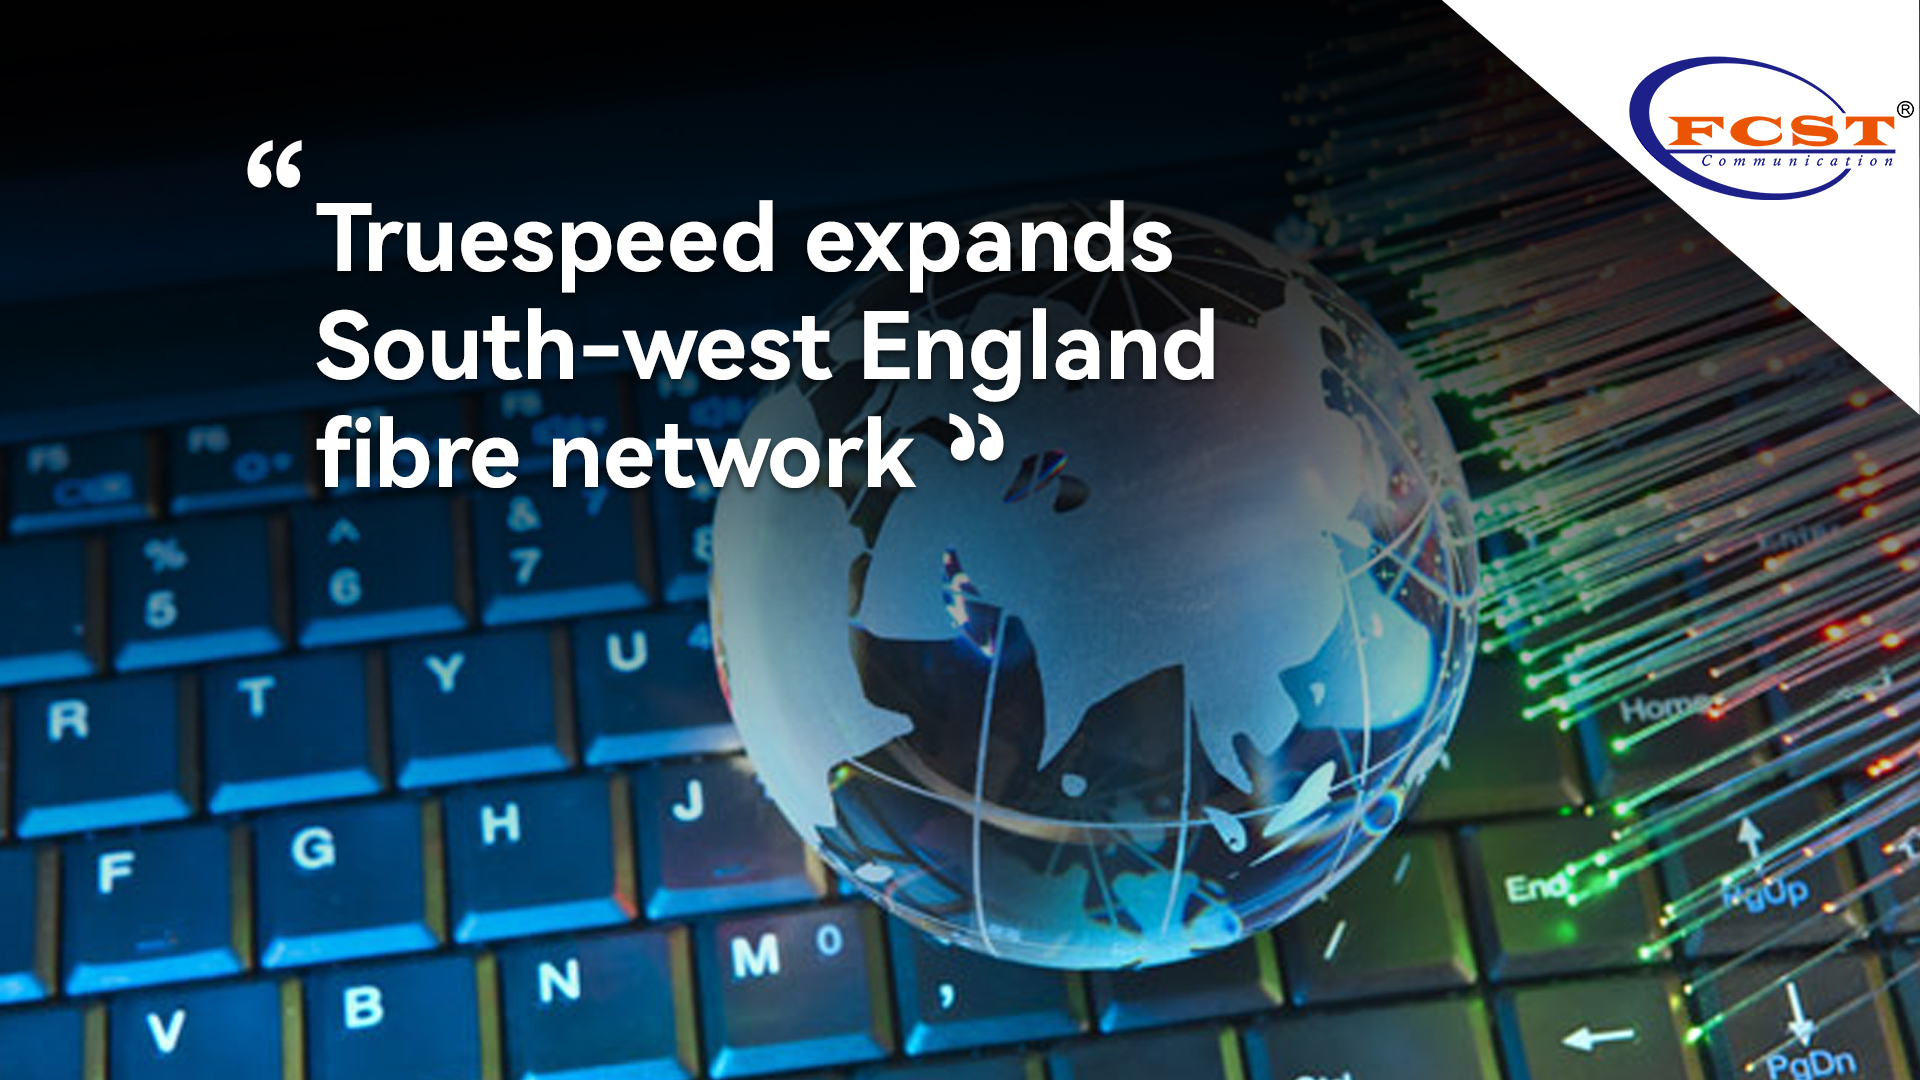 Truespeed expands South-west England fibre network